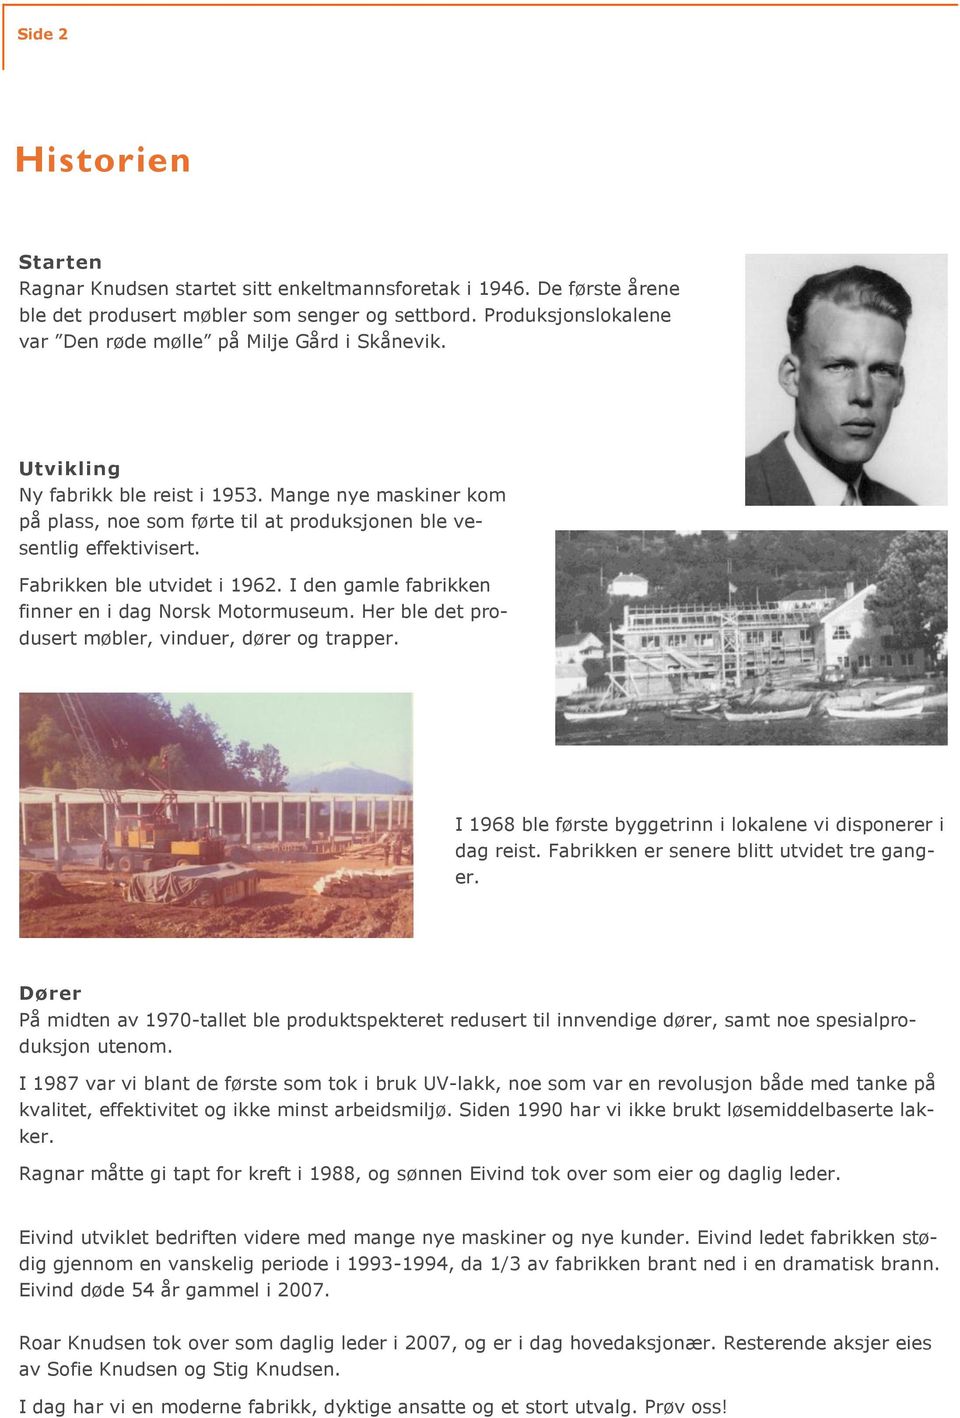 Fabrikken ble utvidet i 1962. I den gamle fabrikken finner en i dag Norsk Motormuseum. Her ble det produsert møbler, vinduer, dører og trapper.